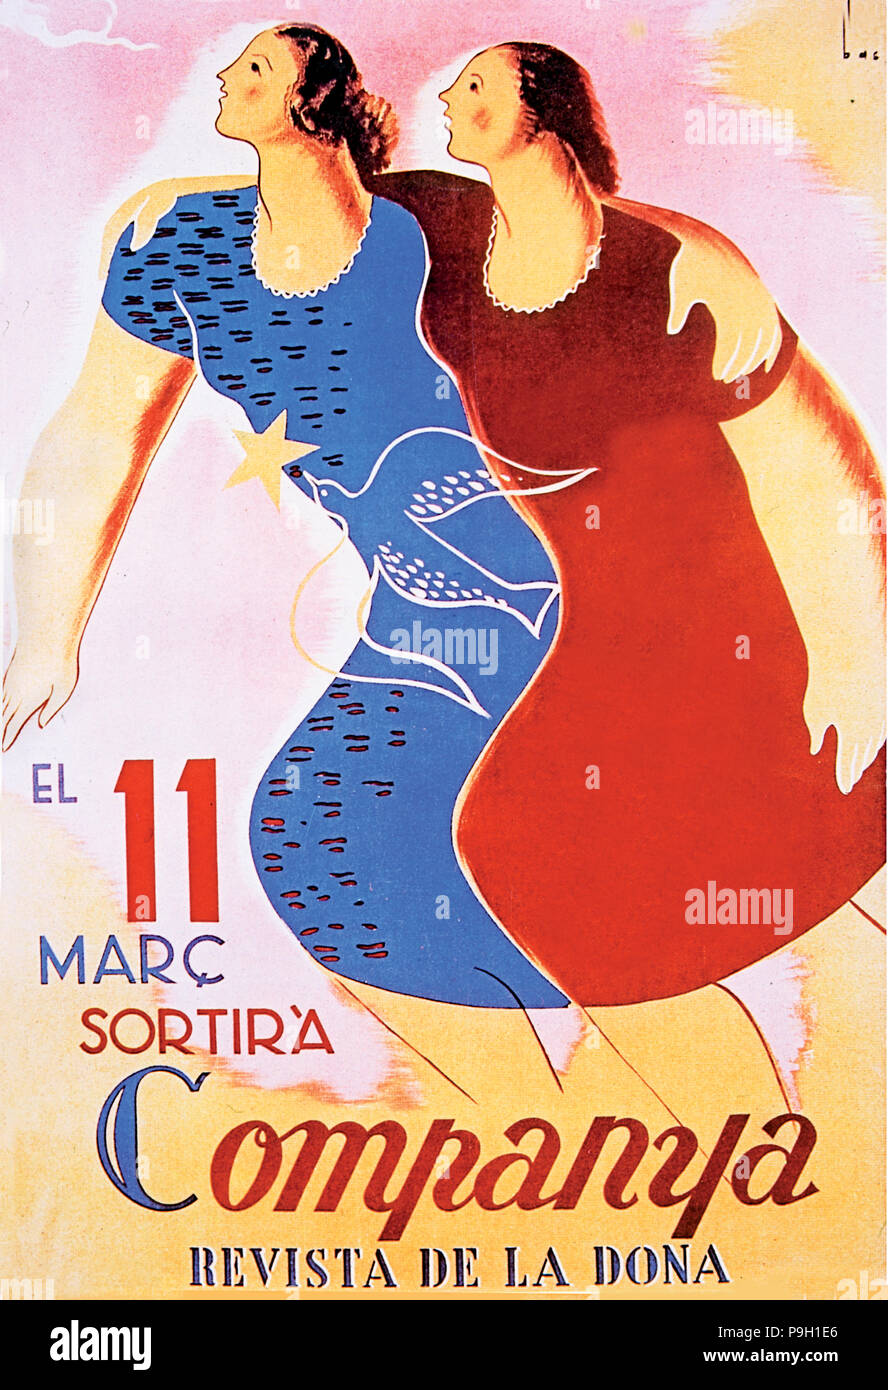 Copertina della rivista 'Companya Revista de la dona' (Collega, donna magazine). Foto Stock